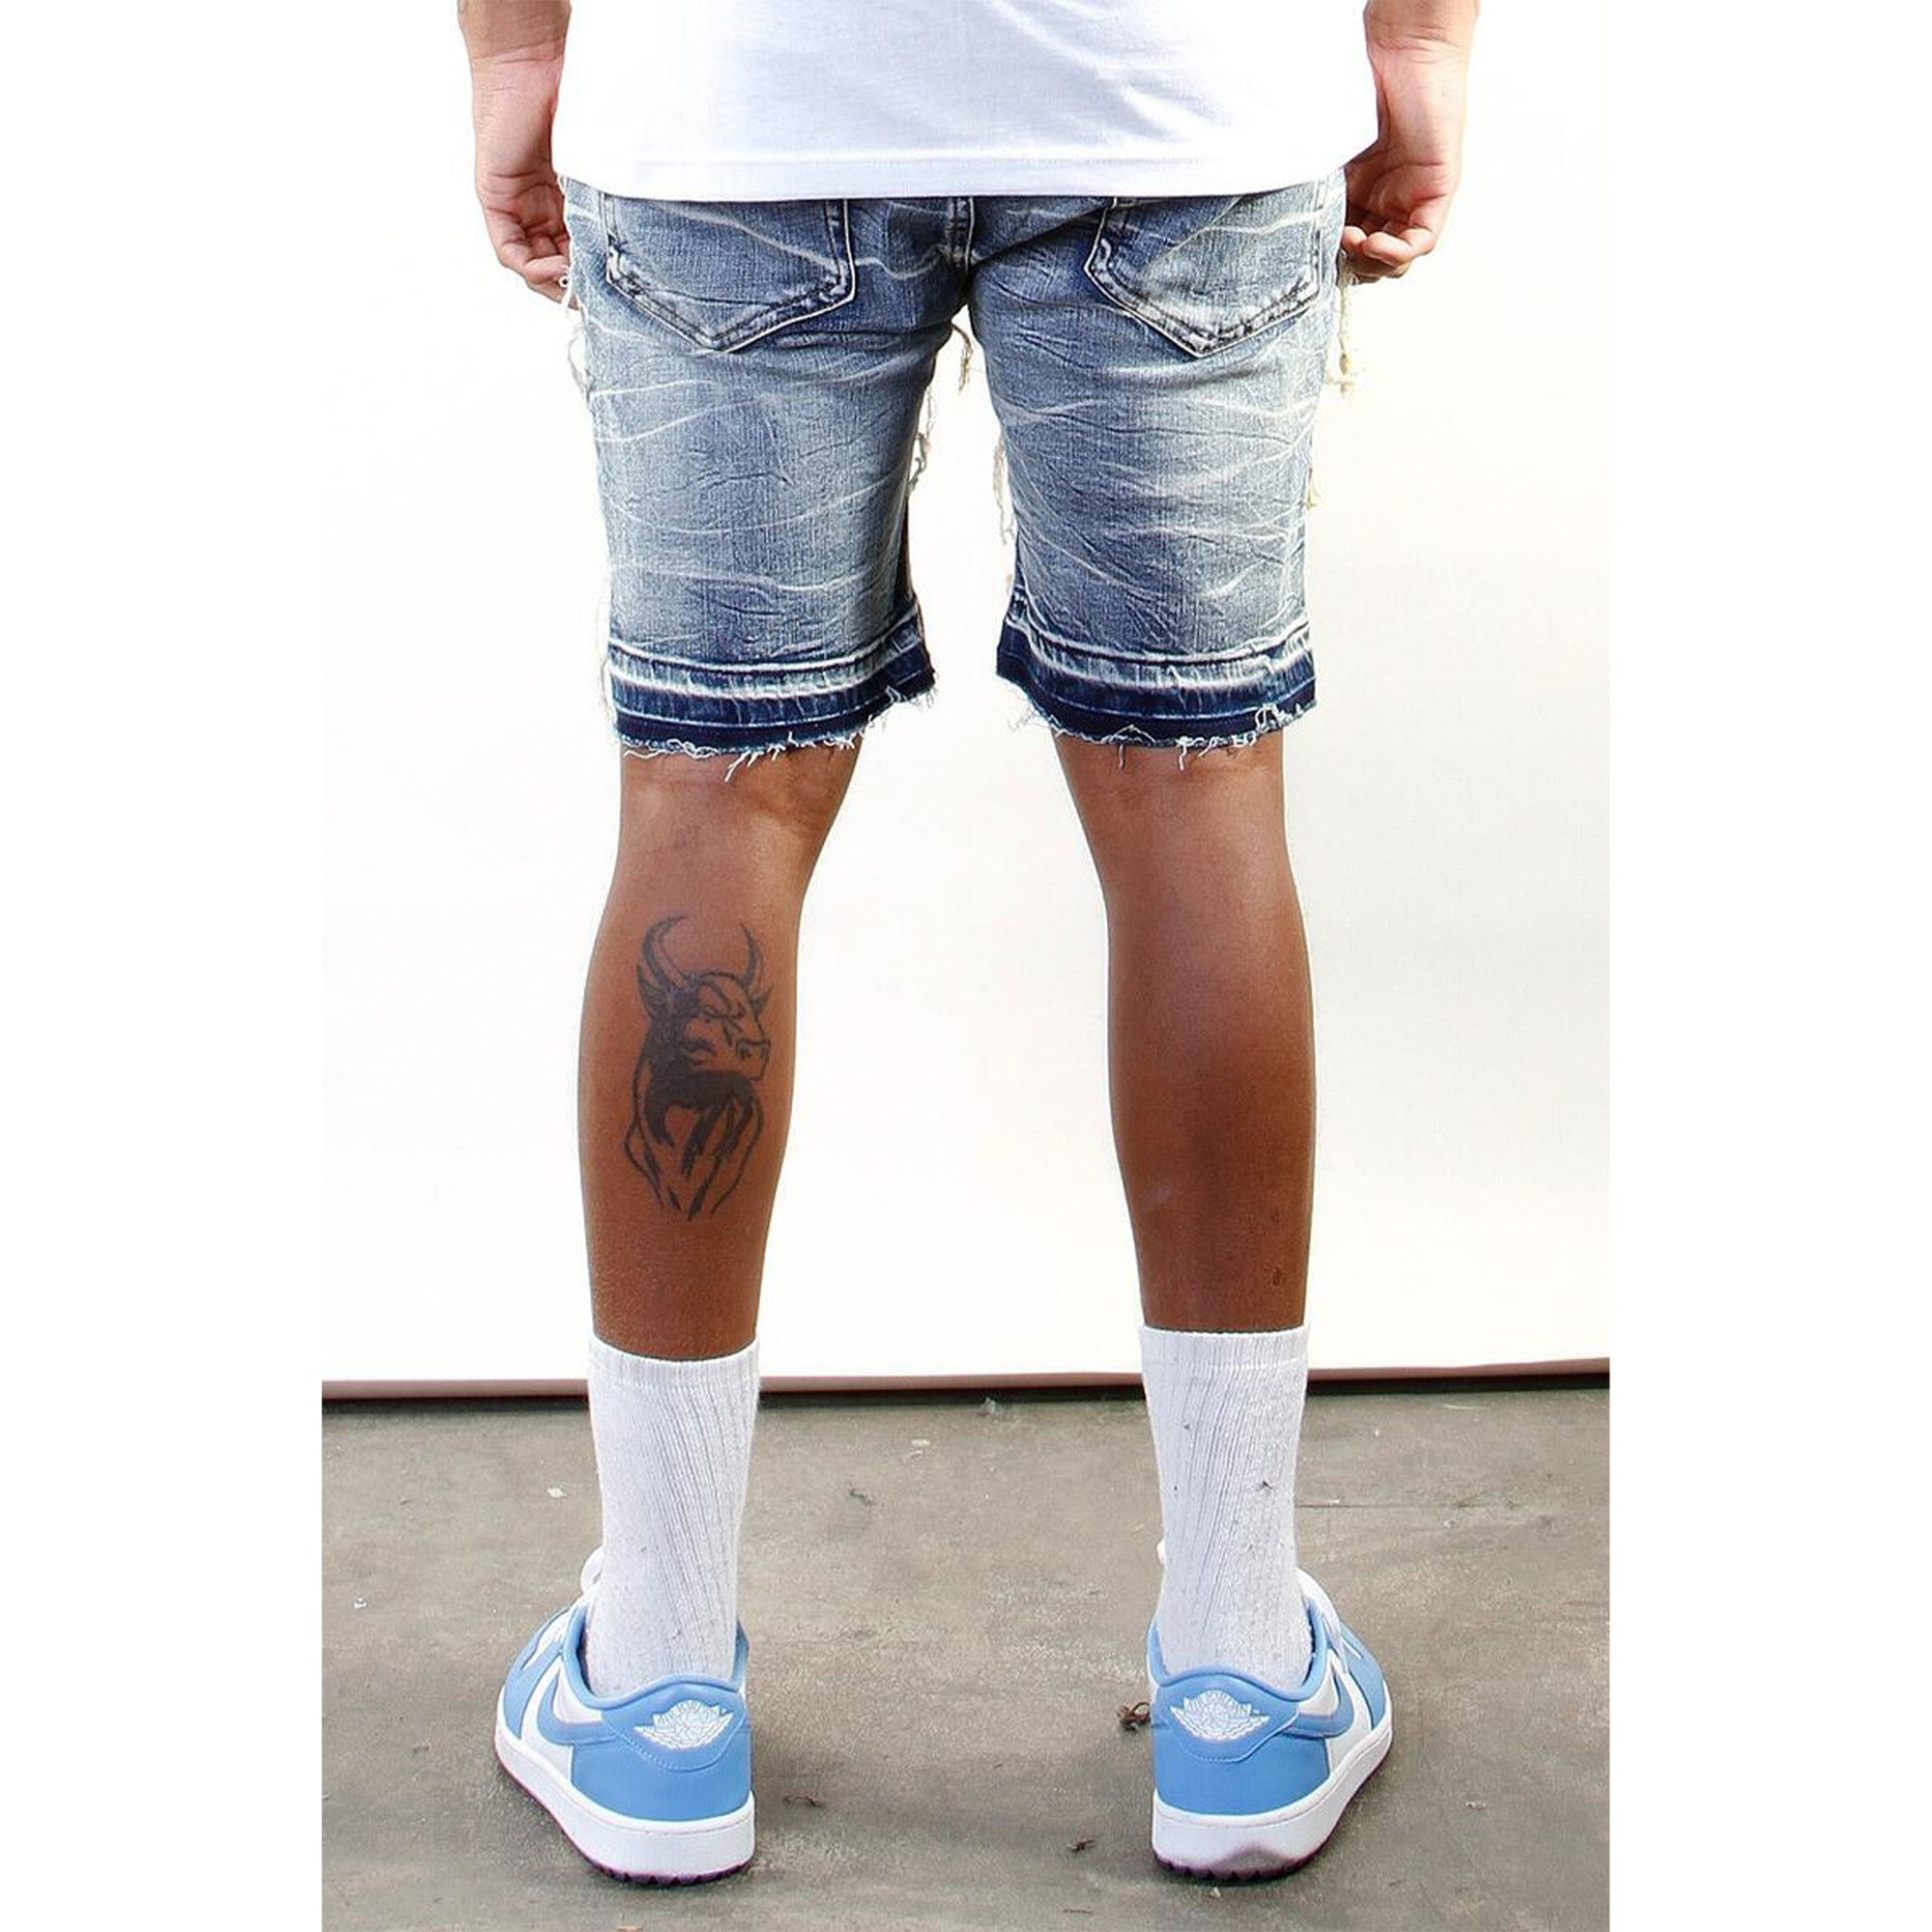 Cooper 9 LA Men Union Stack Jeans Shorts (Crack Wash)2